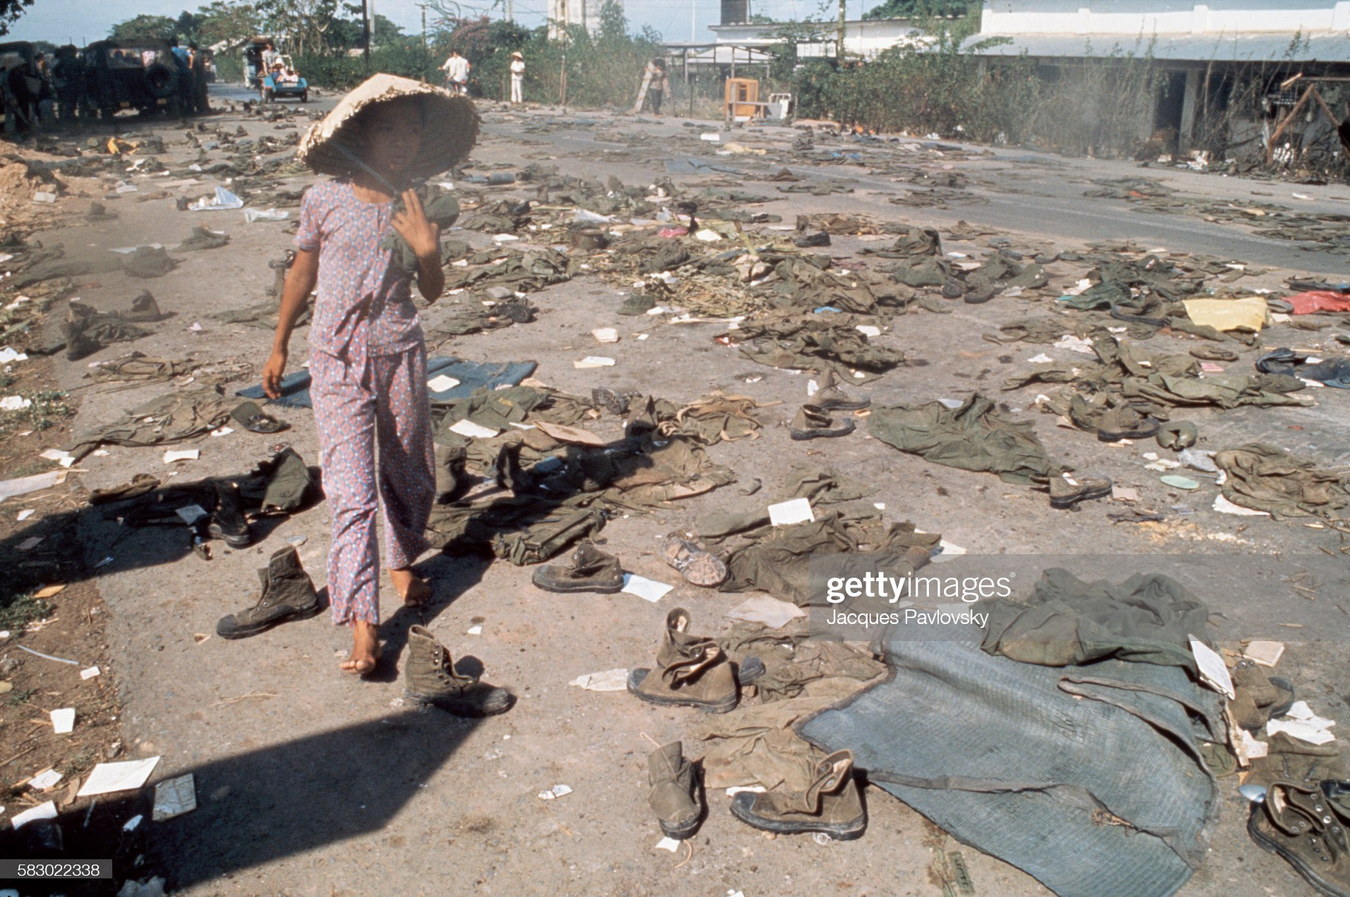 Khoảnh khắc Sài Gòn 30/4/1975 qua ống kính của Nhiếp ảnh gia Jacques Pavlovsky Saigon-30-4-1975-Jacques-Pavlovsky-21